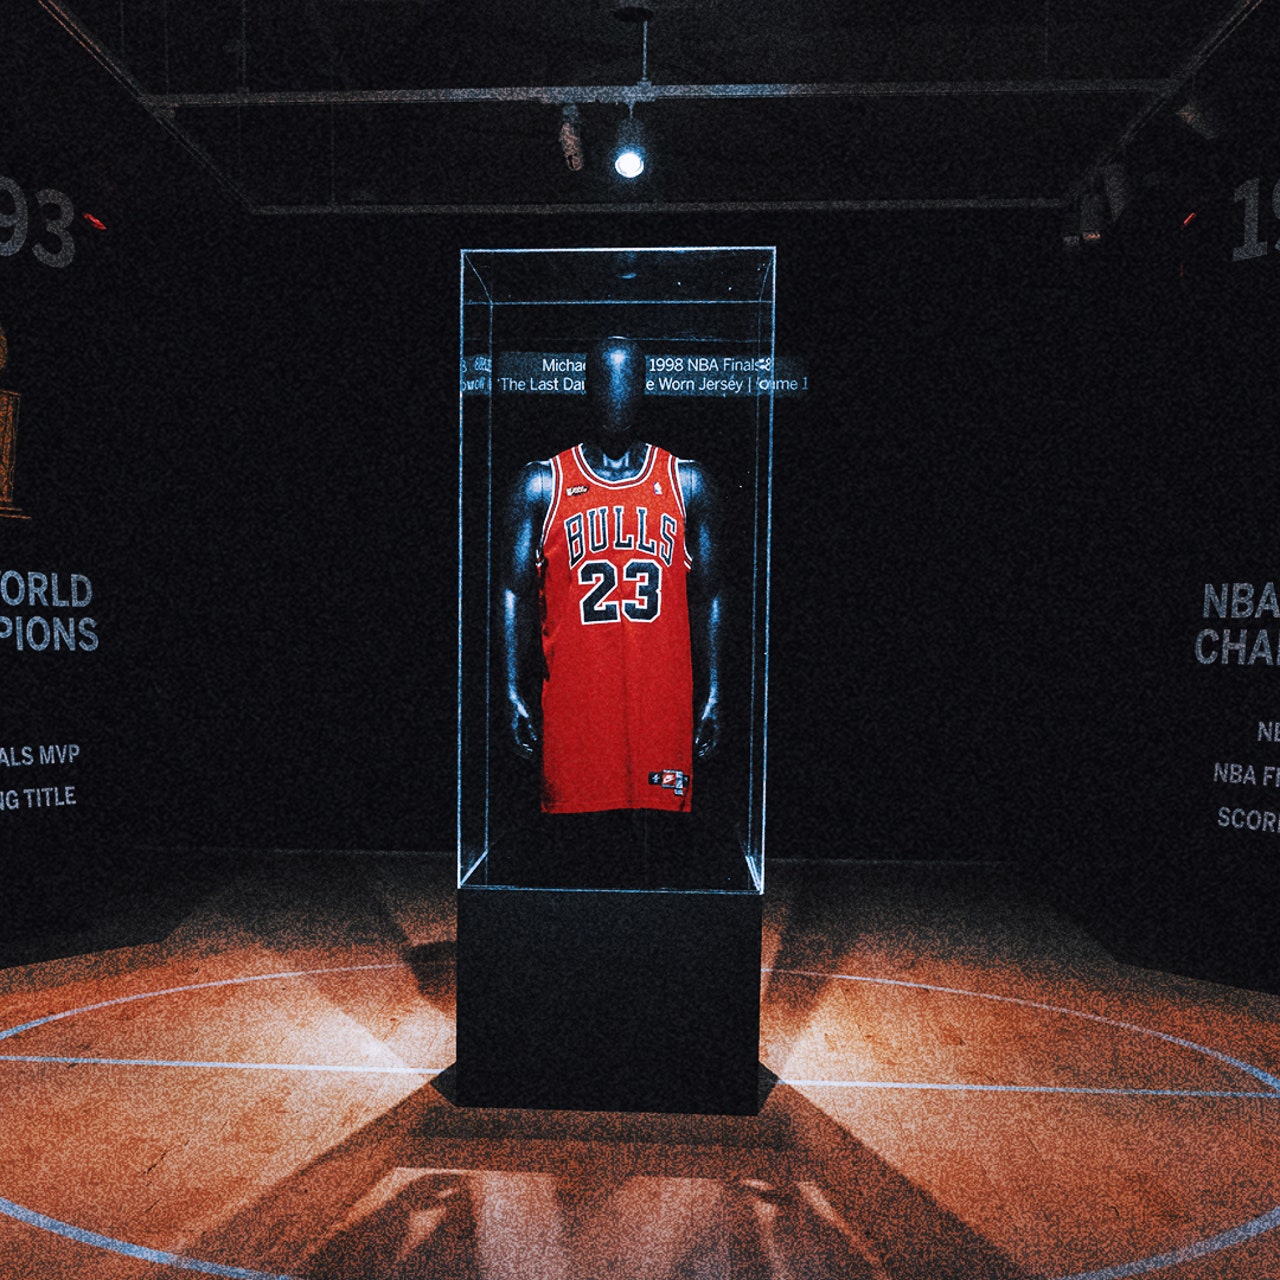 1998 MVP Race: Michael Jordan Won His Last MVP Award With More